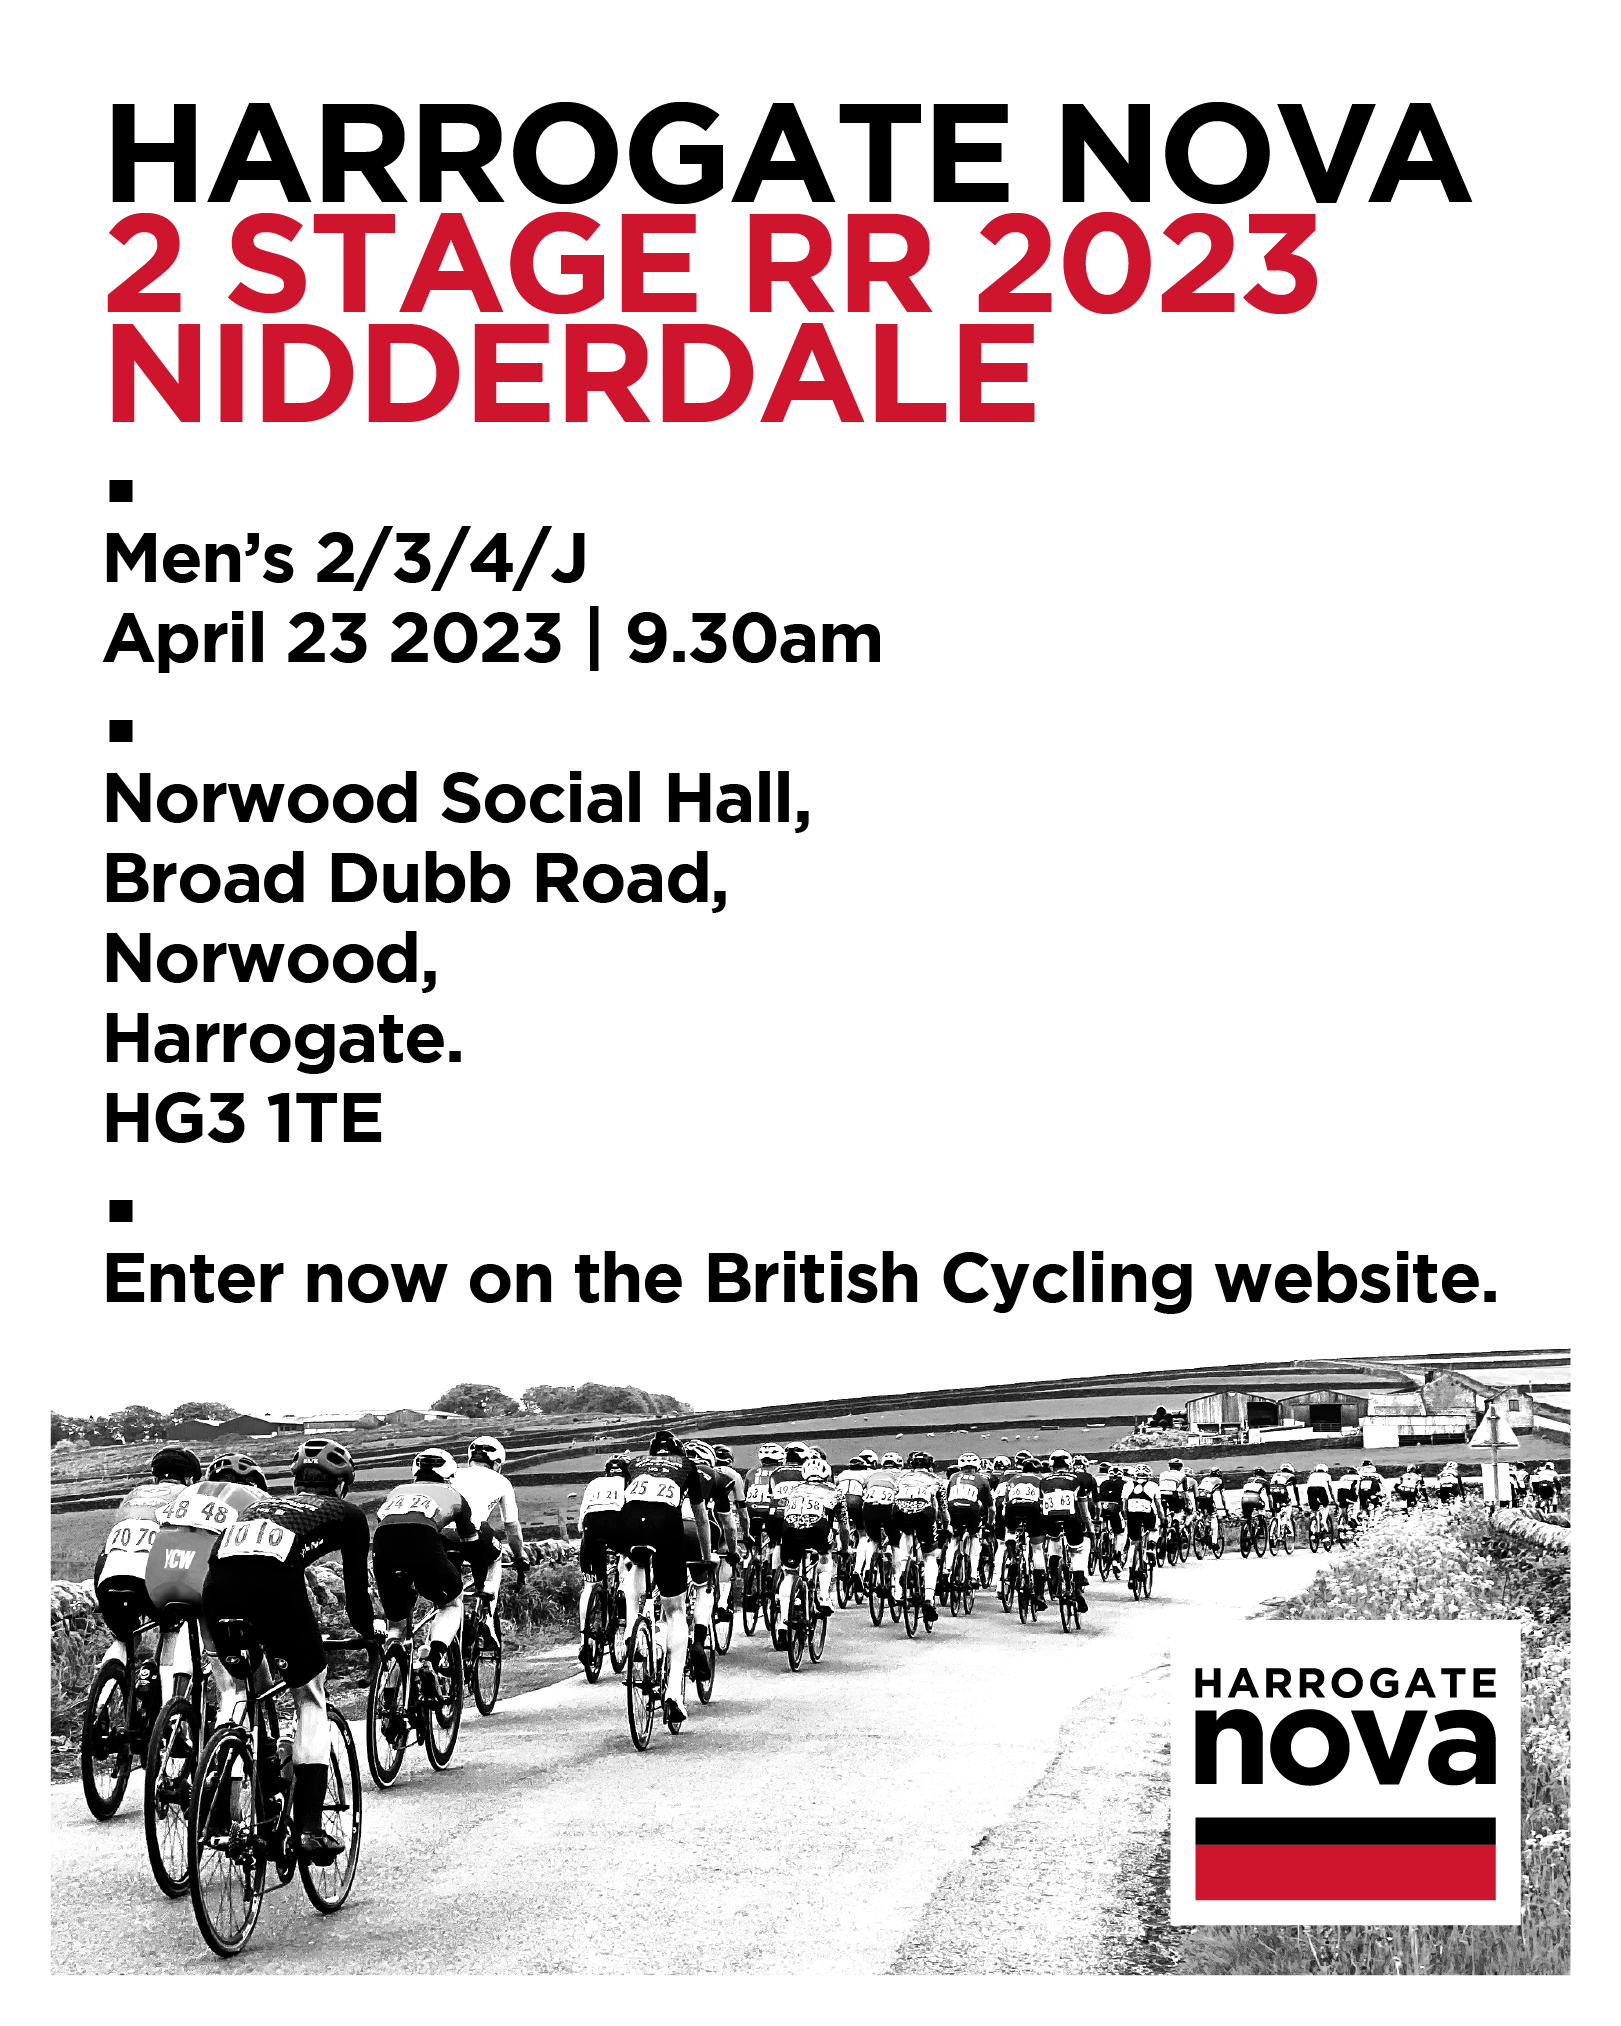 Harrogate Nova Road Race Coming Soon